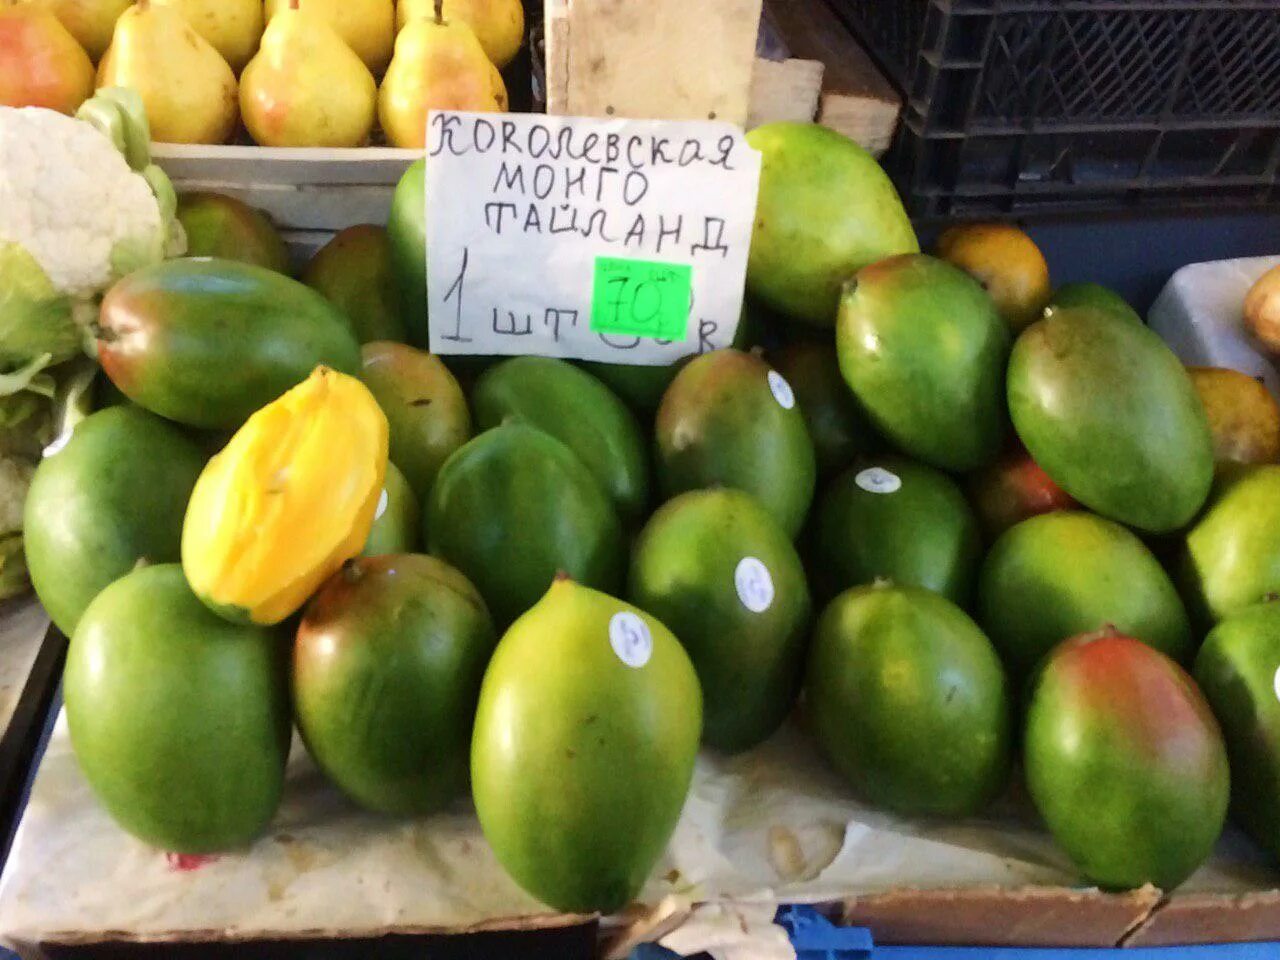 Сколько стоит кг манго. Сорта манго в Тайланде. Манго Тайланд зеленое. Сорта тайского манго. Манго фрукт тайский сорт.